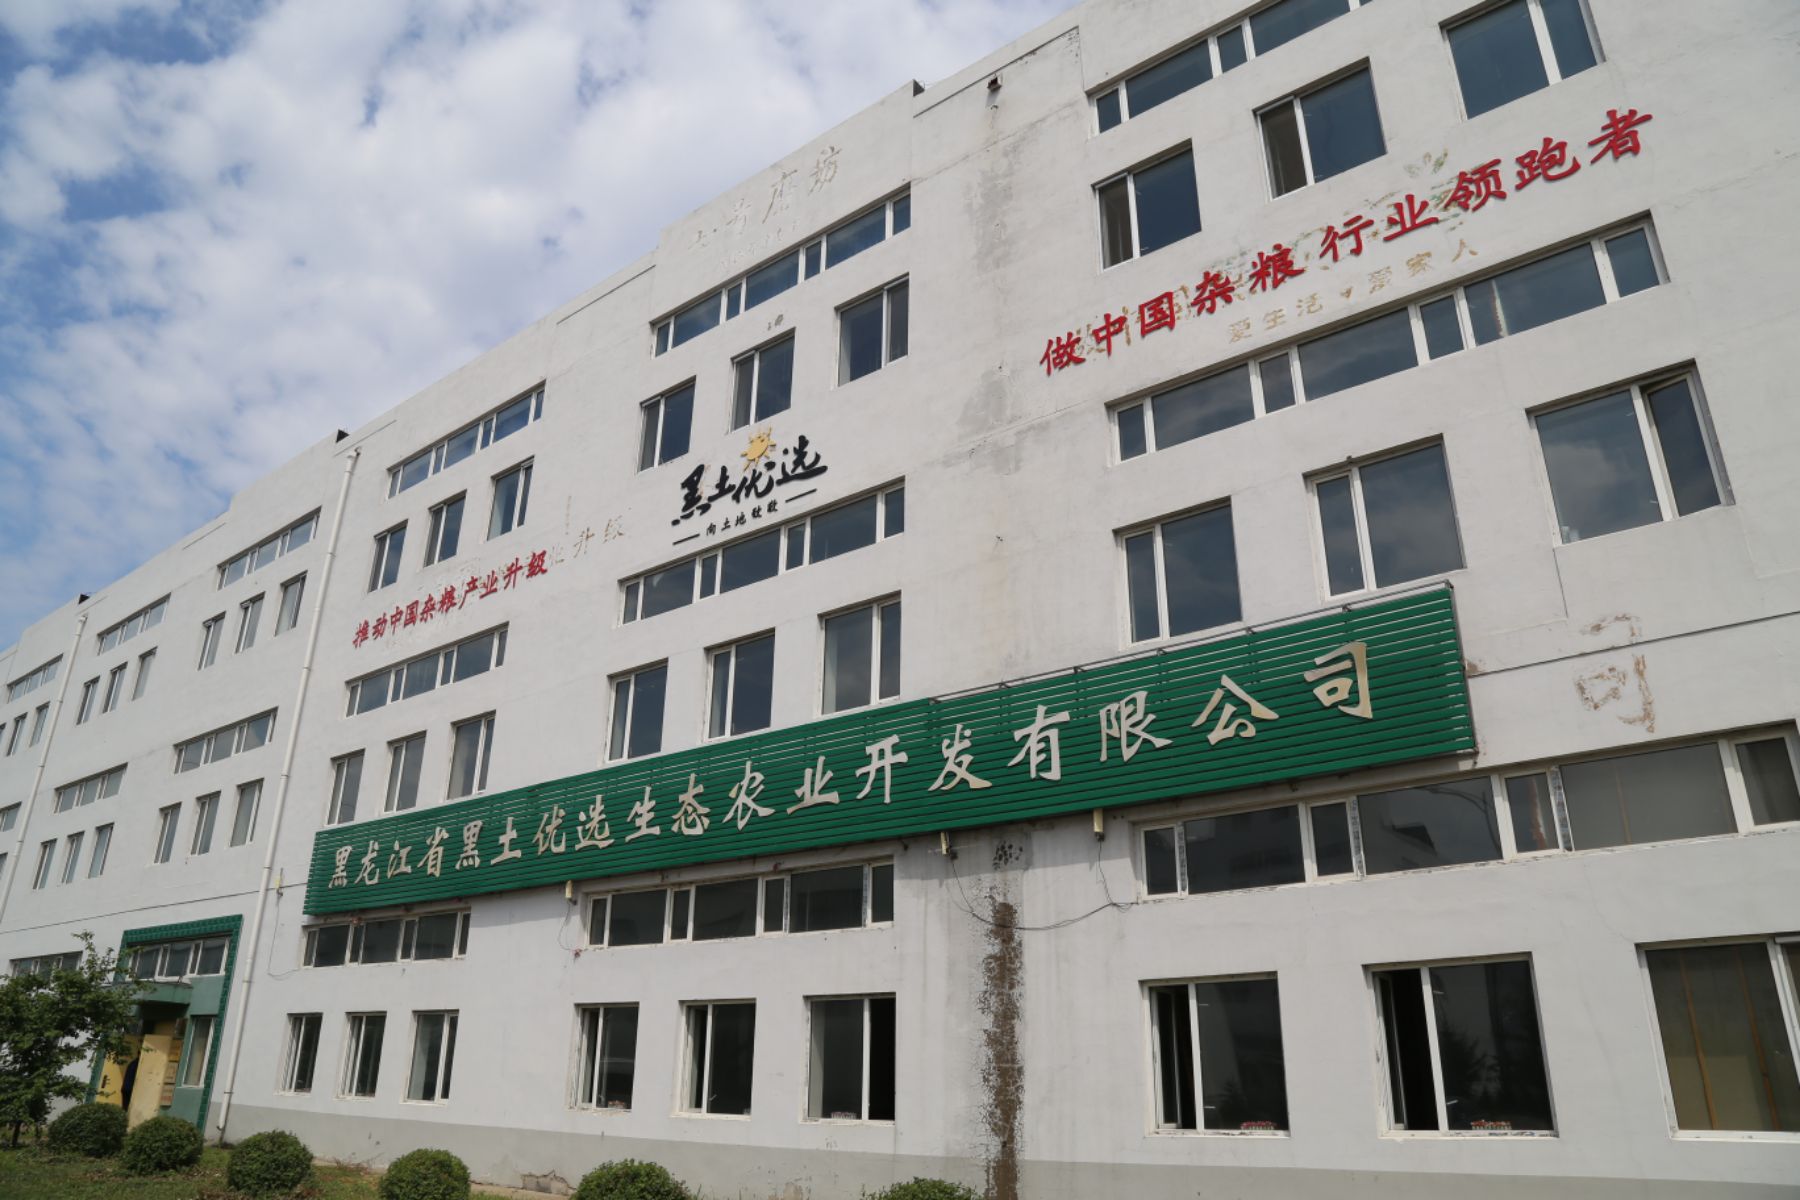 黑龙江省黑土优选生态农业开发有限公司